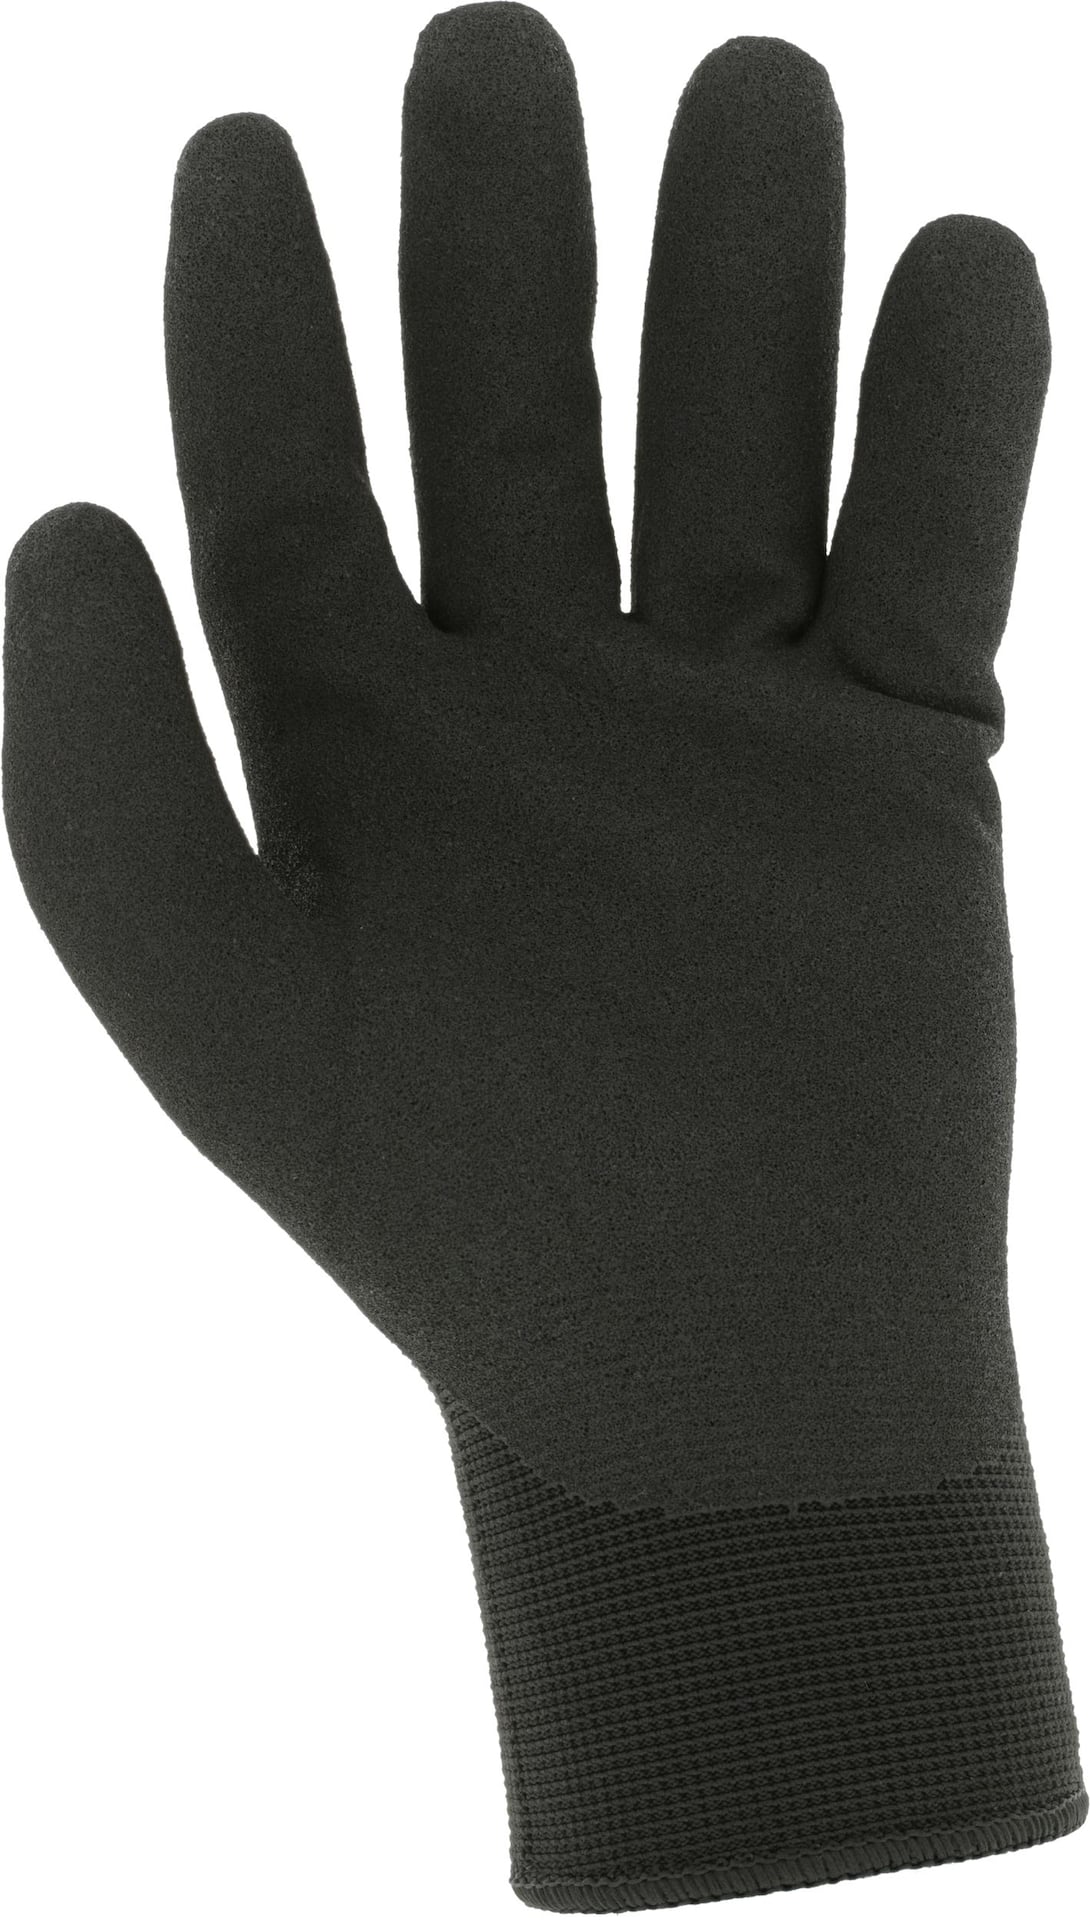 Mechanix Wear SpeedKnit Thermal Winter Work Glove | Canadian